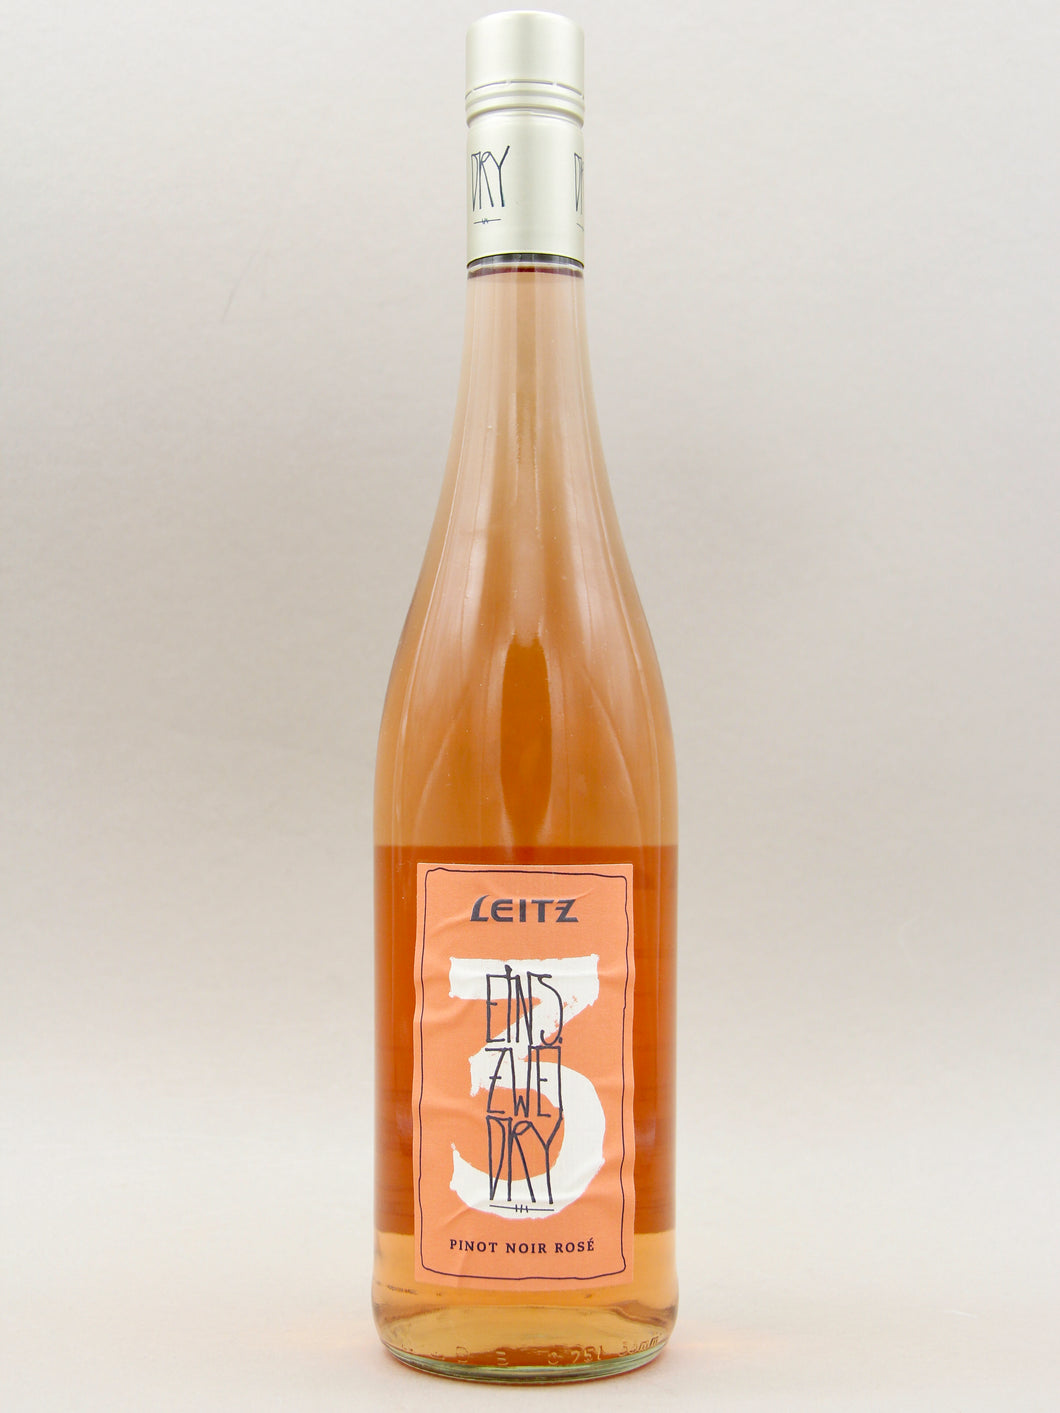 Leitz, Eins Zwei Dry, Pinot Noir Rosé (12%, 75cl)